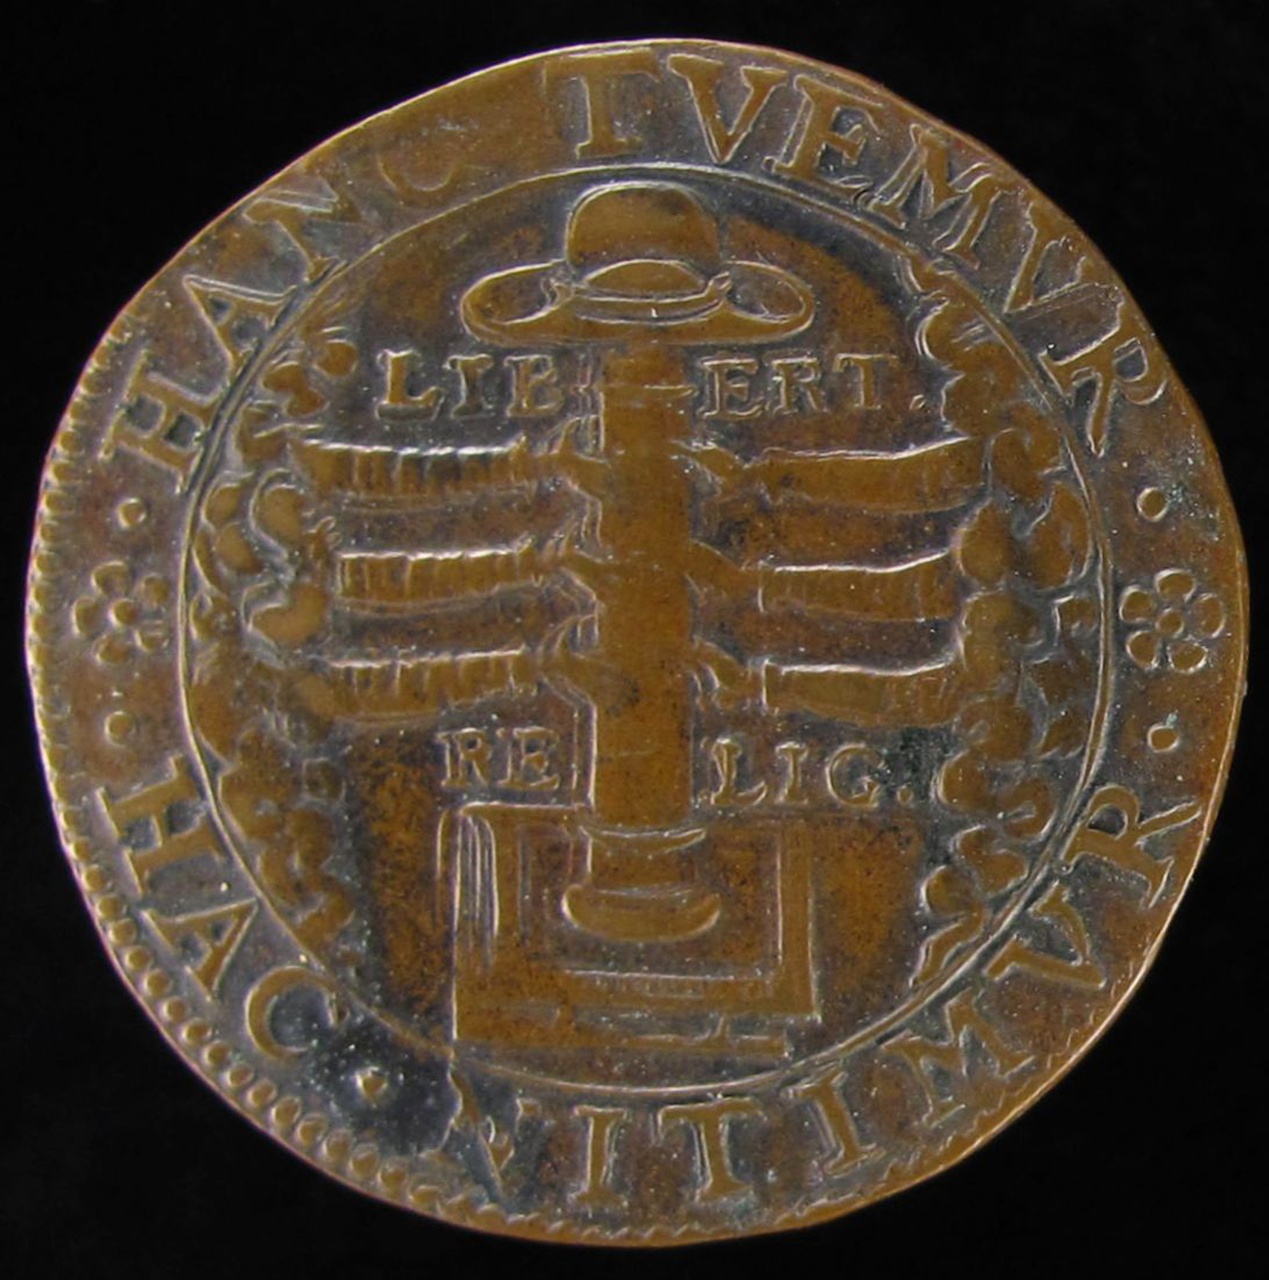 Prins Maurits tot stadhouder van Overijsel en Gelderland verkozen, 1590